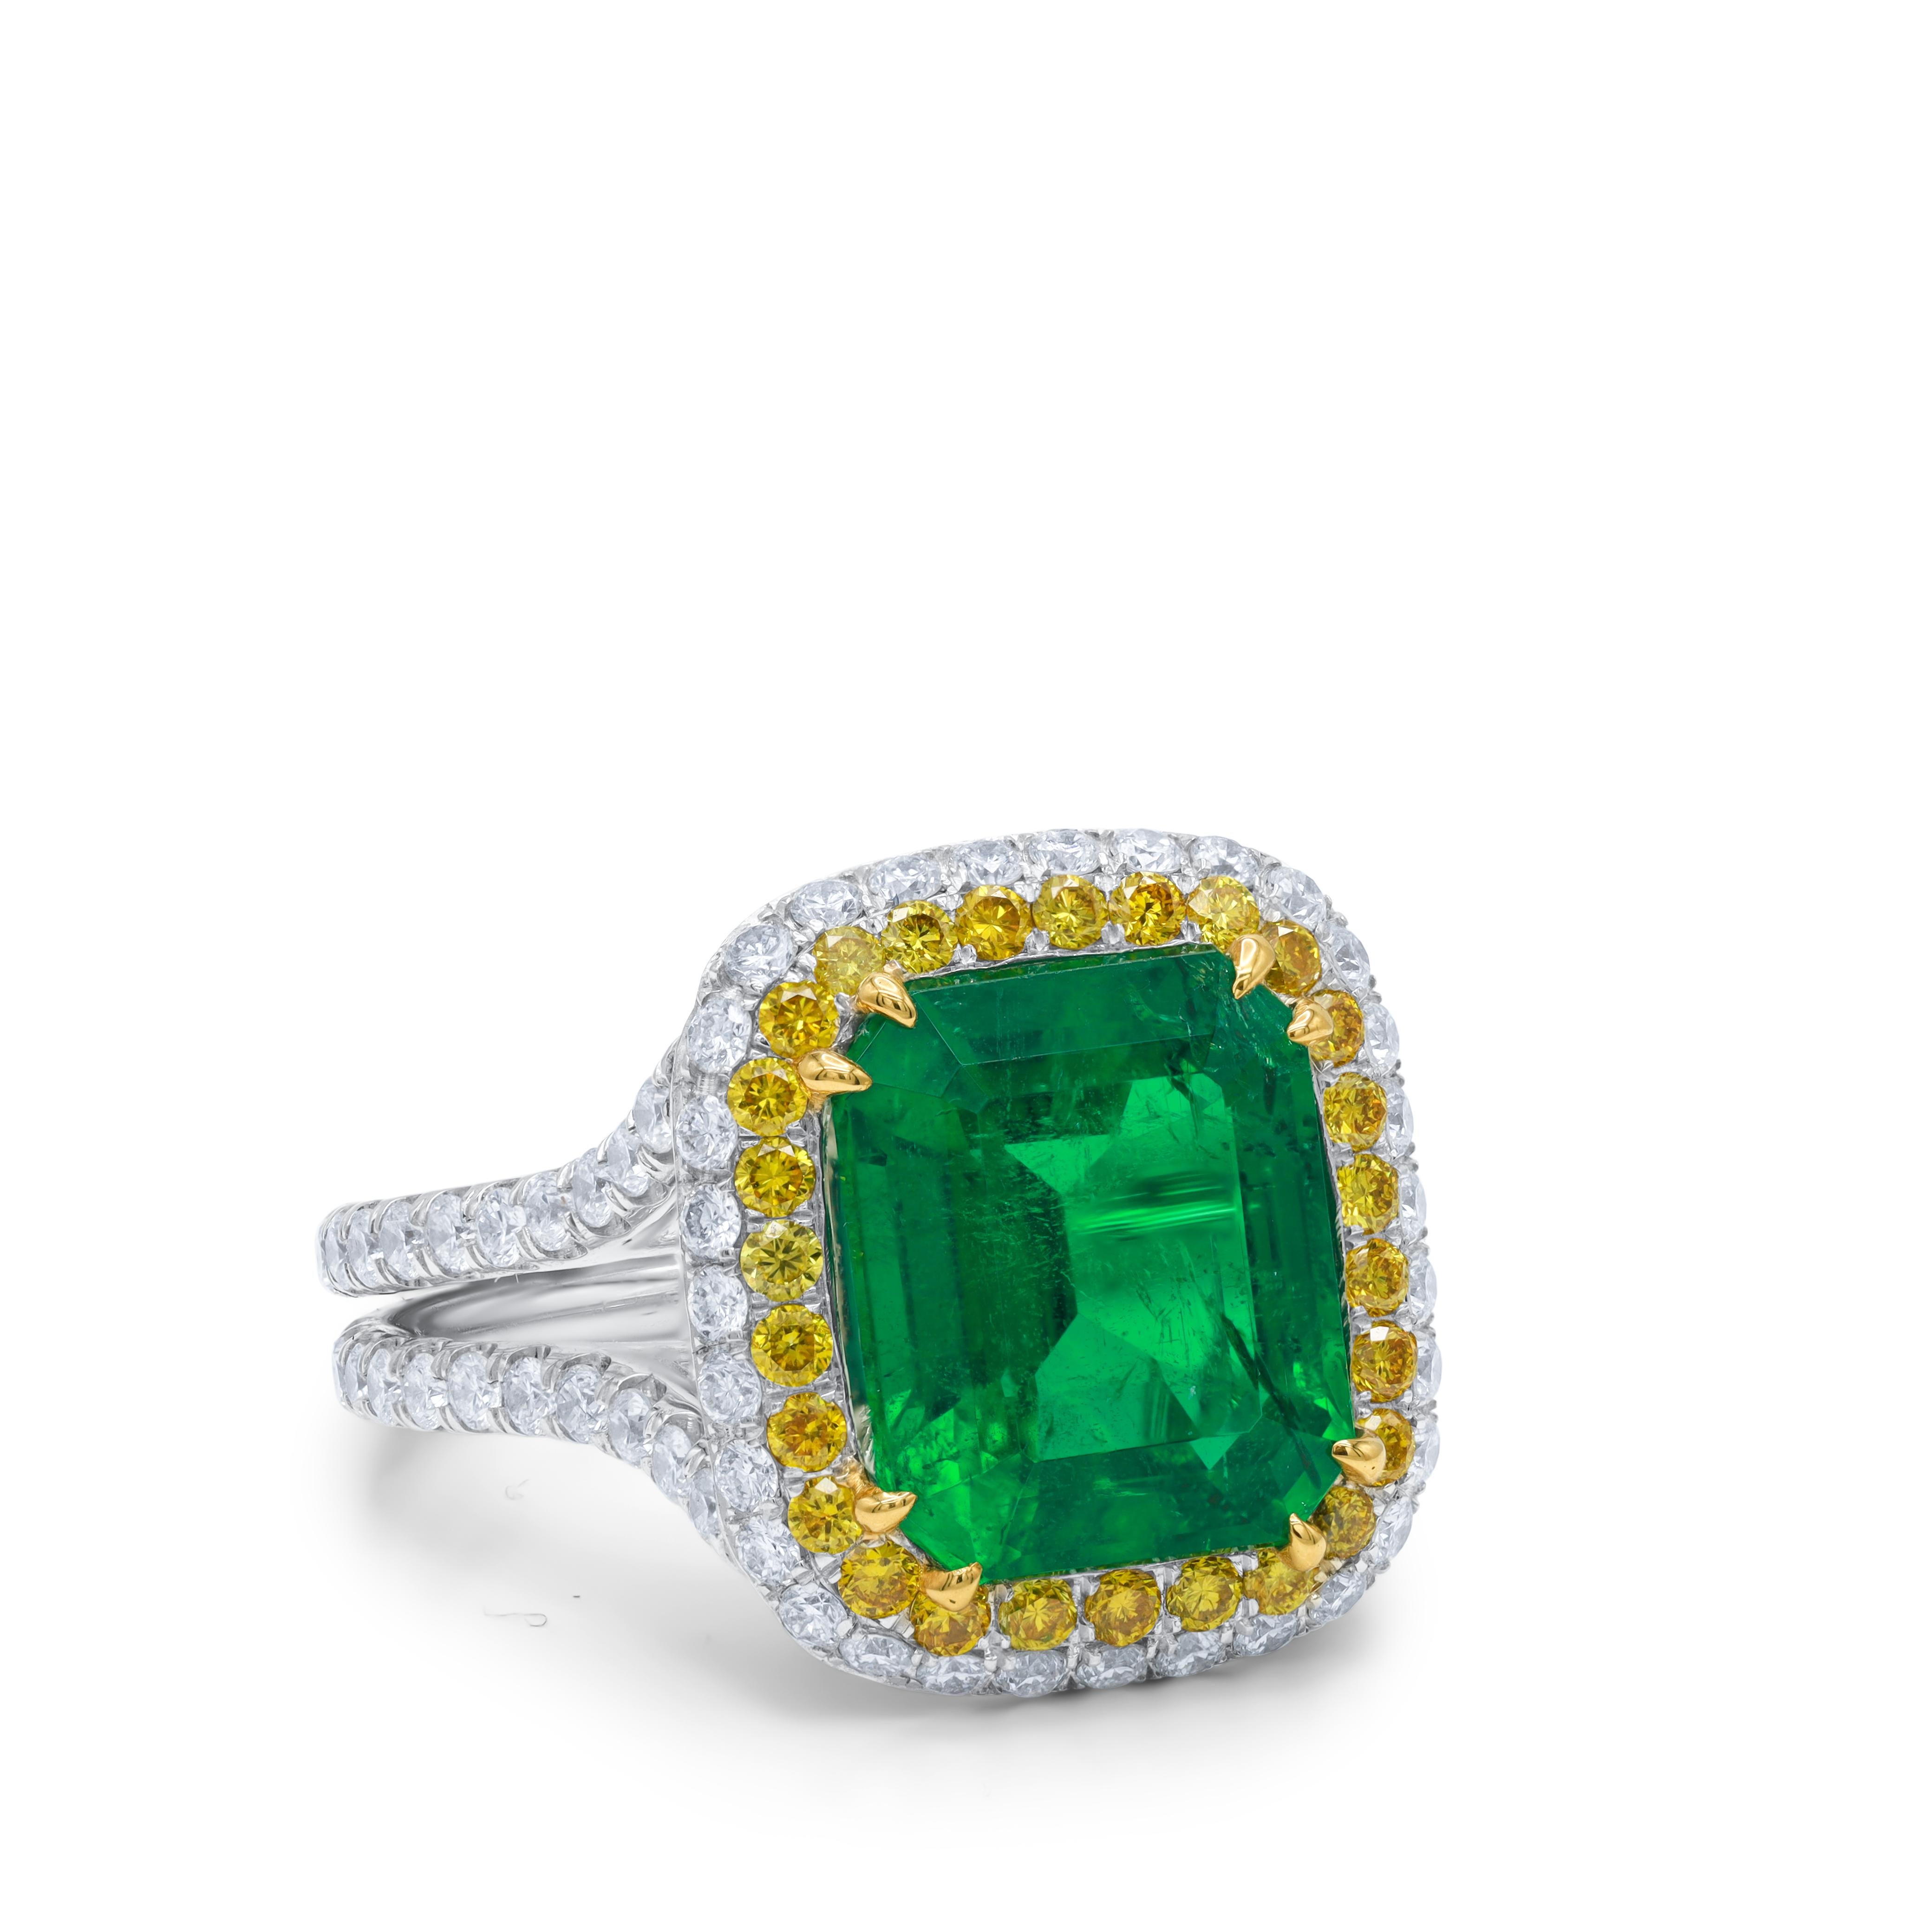 Smaragd-Diamant-Ring aus 18 Karat Weißgold.  Mit einem grünen Smaragd von 3,97 Karat und gelben und weißen Diamanten von je 2,80 Karat in einer Halofassung mit geteiltem Schaft 